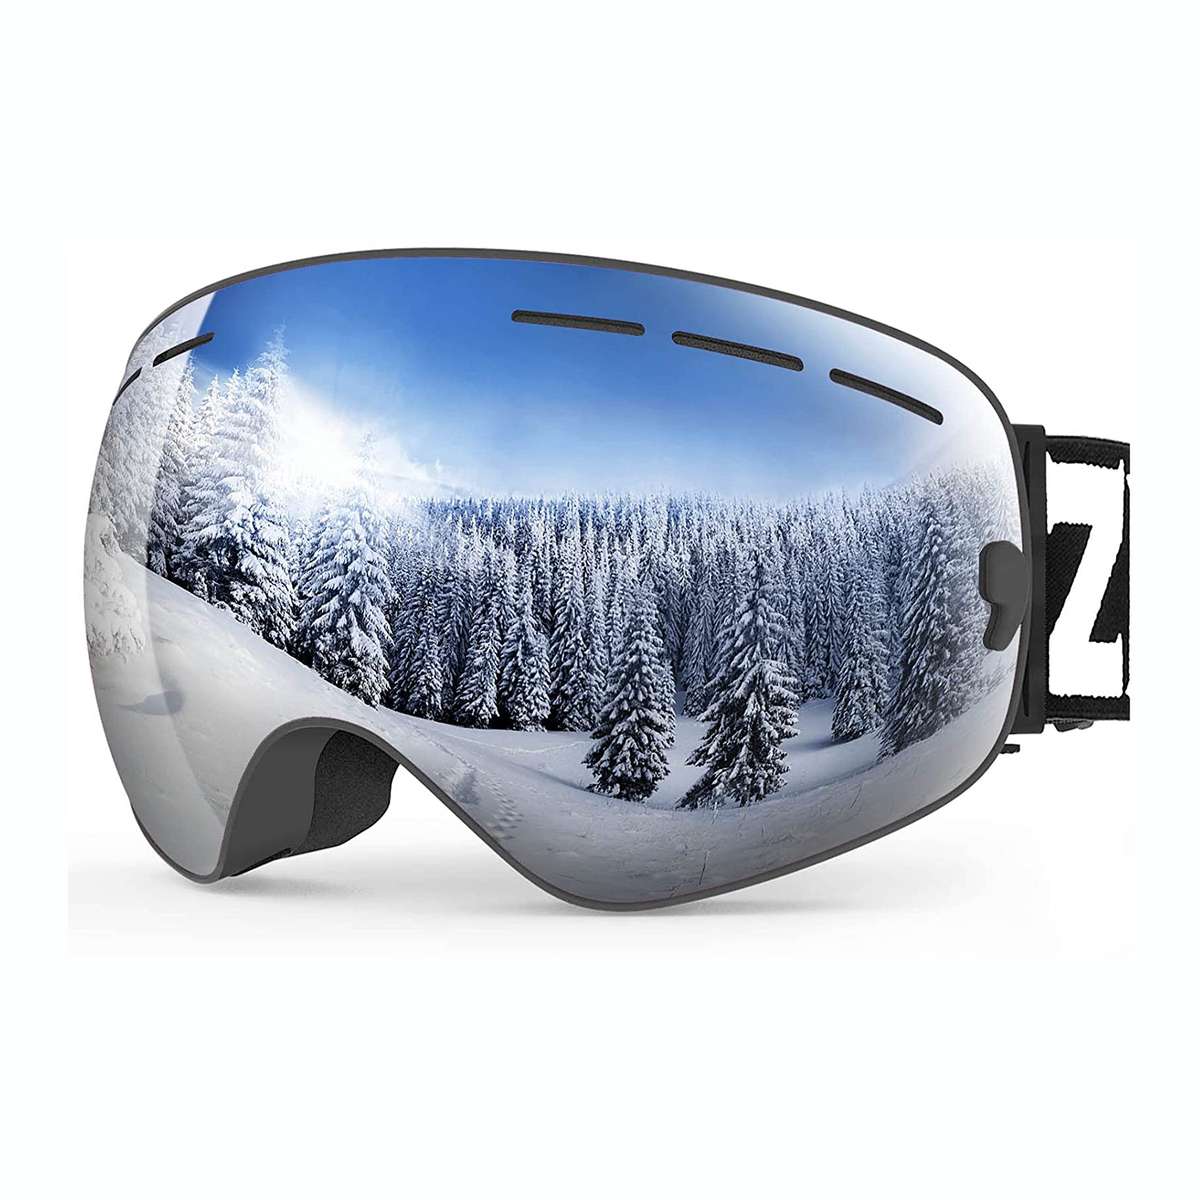 ZIONOR X Ski Goggles - OTG Snowboard Goggles Detachable Lens